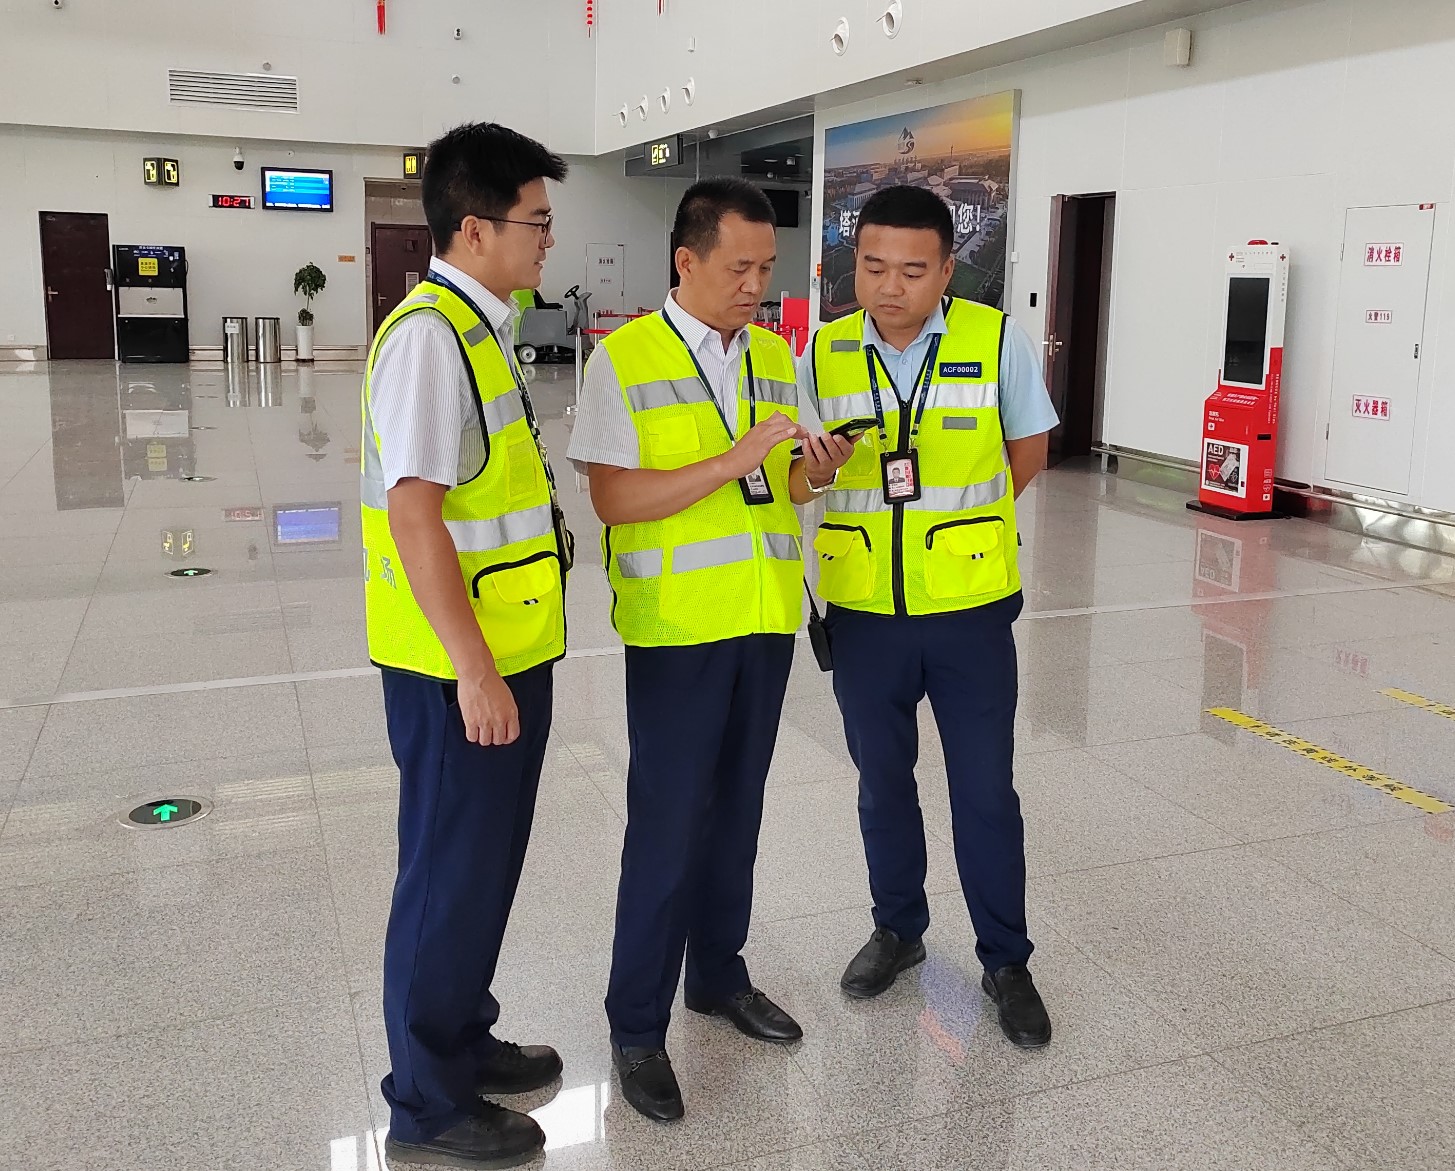 新疆机场集团运管委持续推动“手指口述” 工作法落实落地